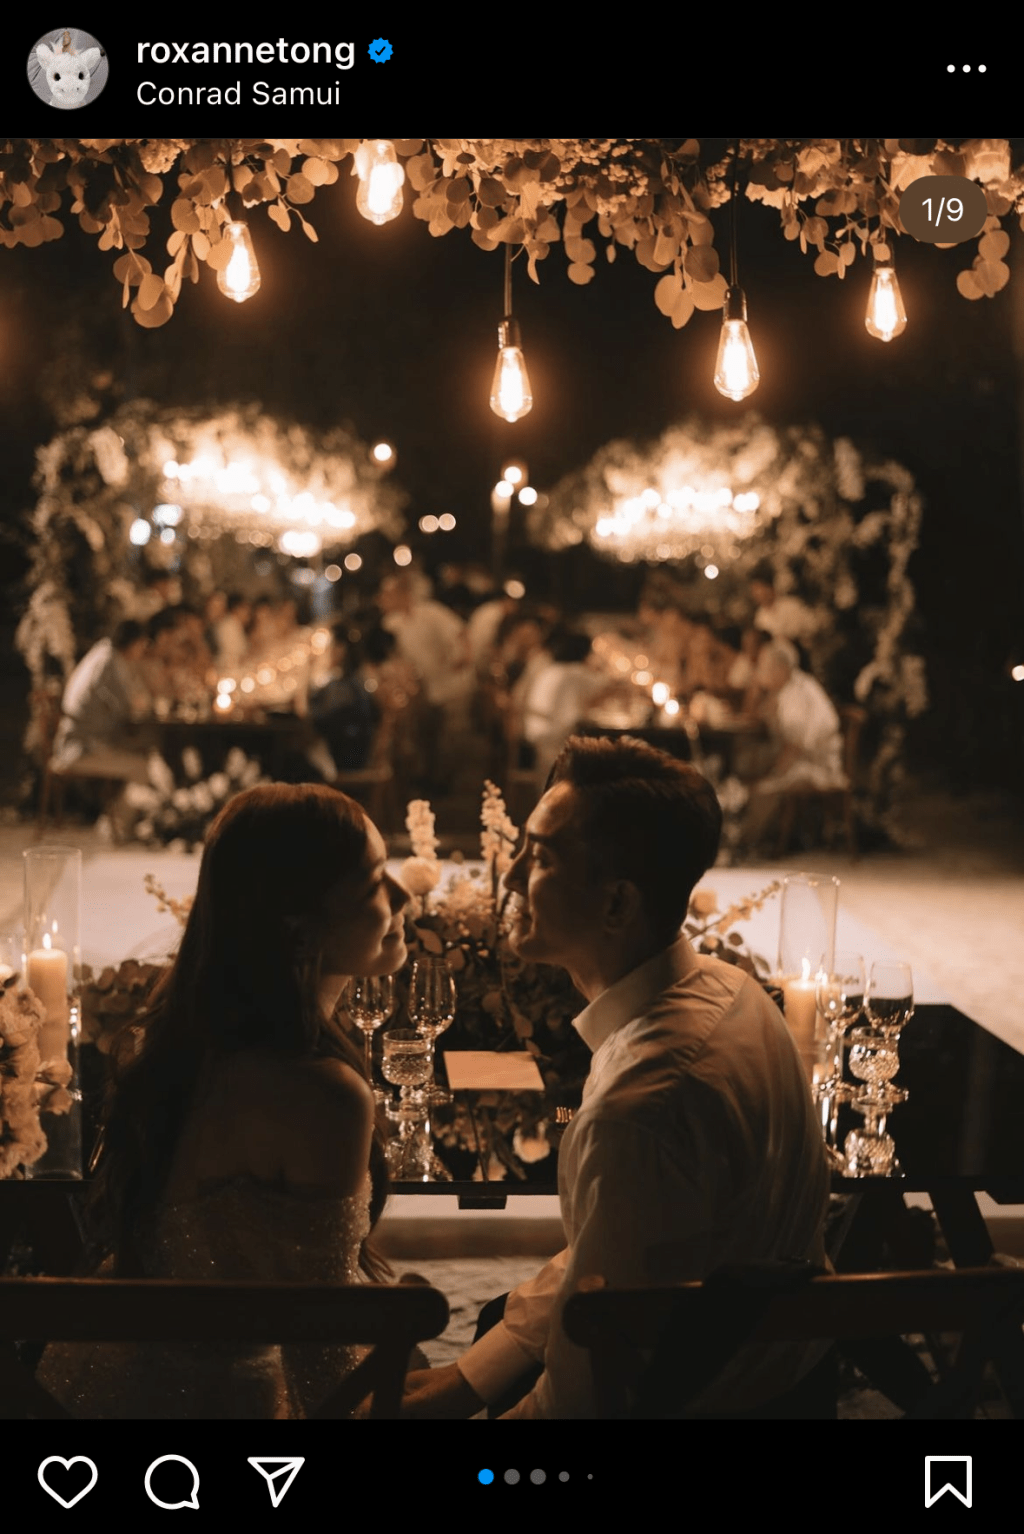 馬國明和湯洛雯婚禮在蘇梅島的Conard舉行。